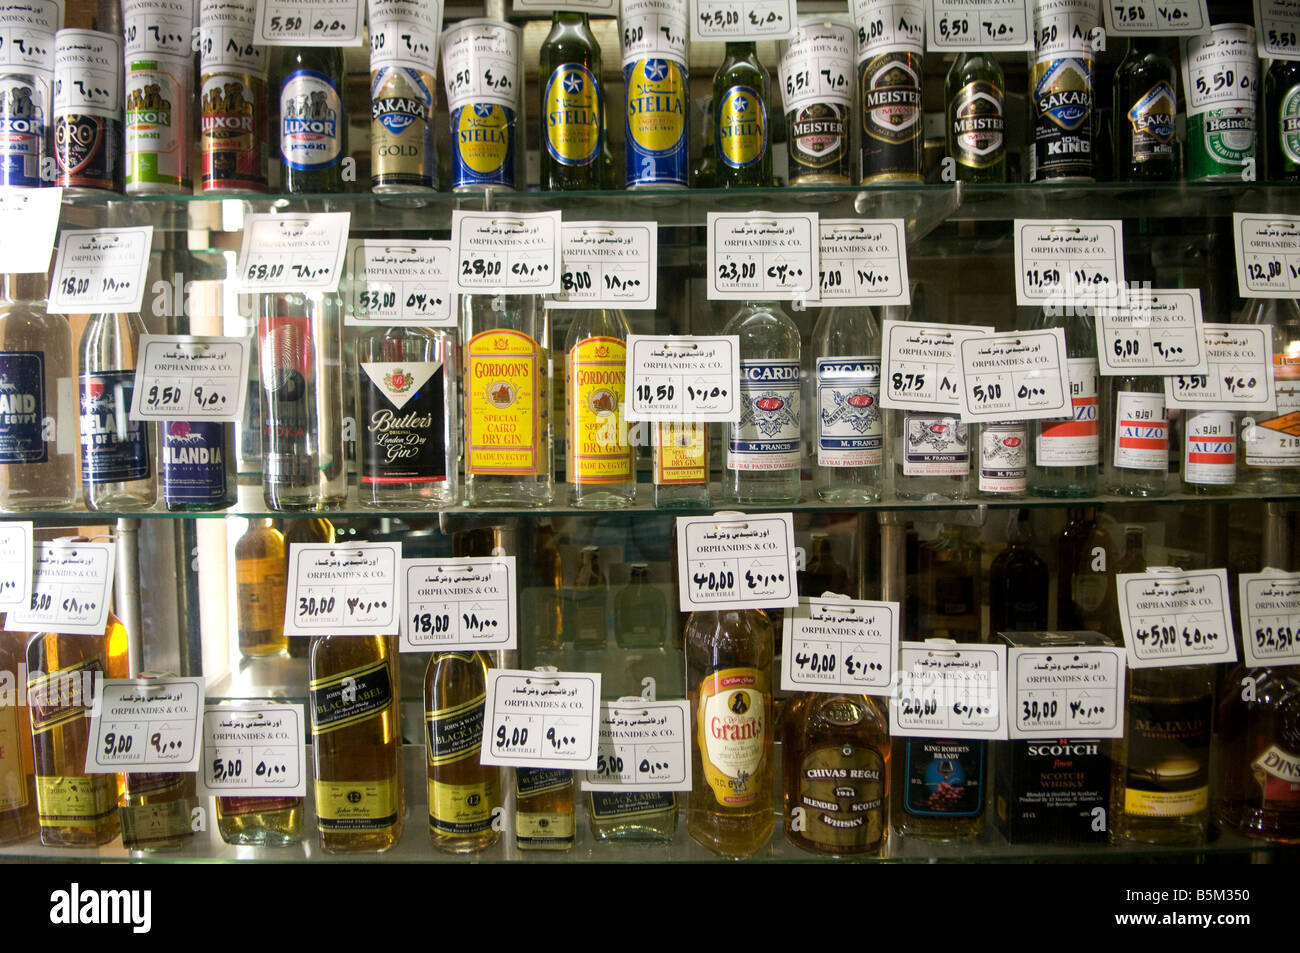 Flaschen alkoholischer Getränke in einem Spiritus shop in Kairo Ägypten  angezeigt Stockfotografie - Alamy